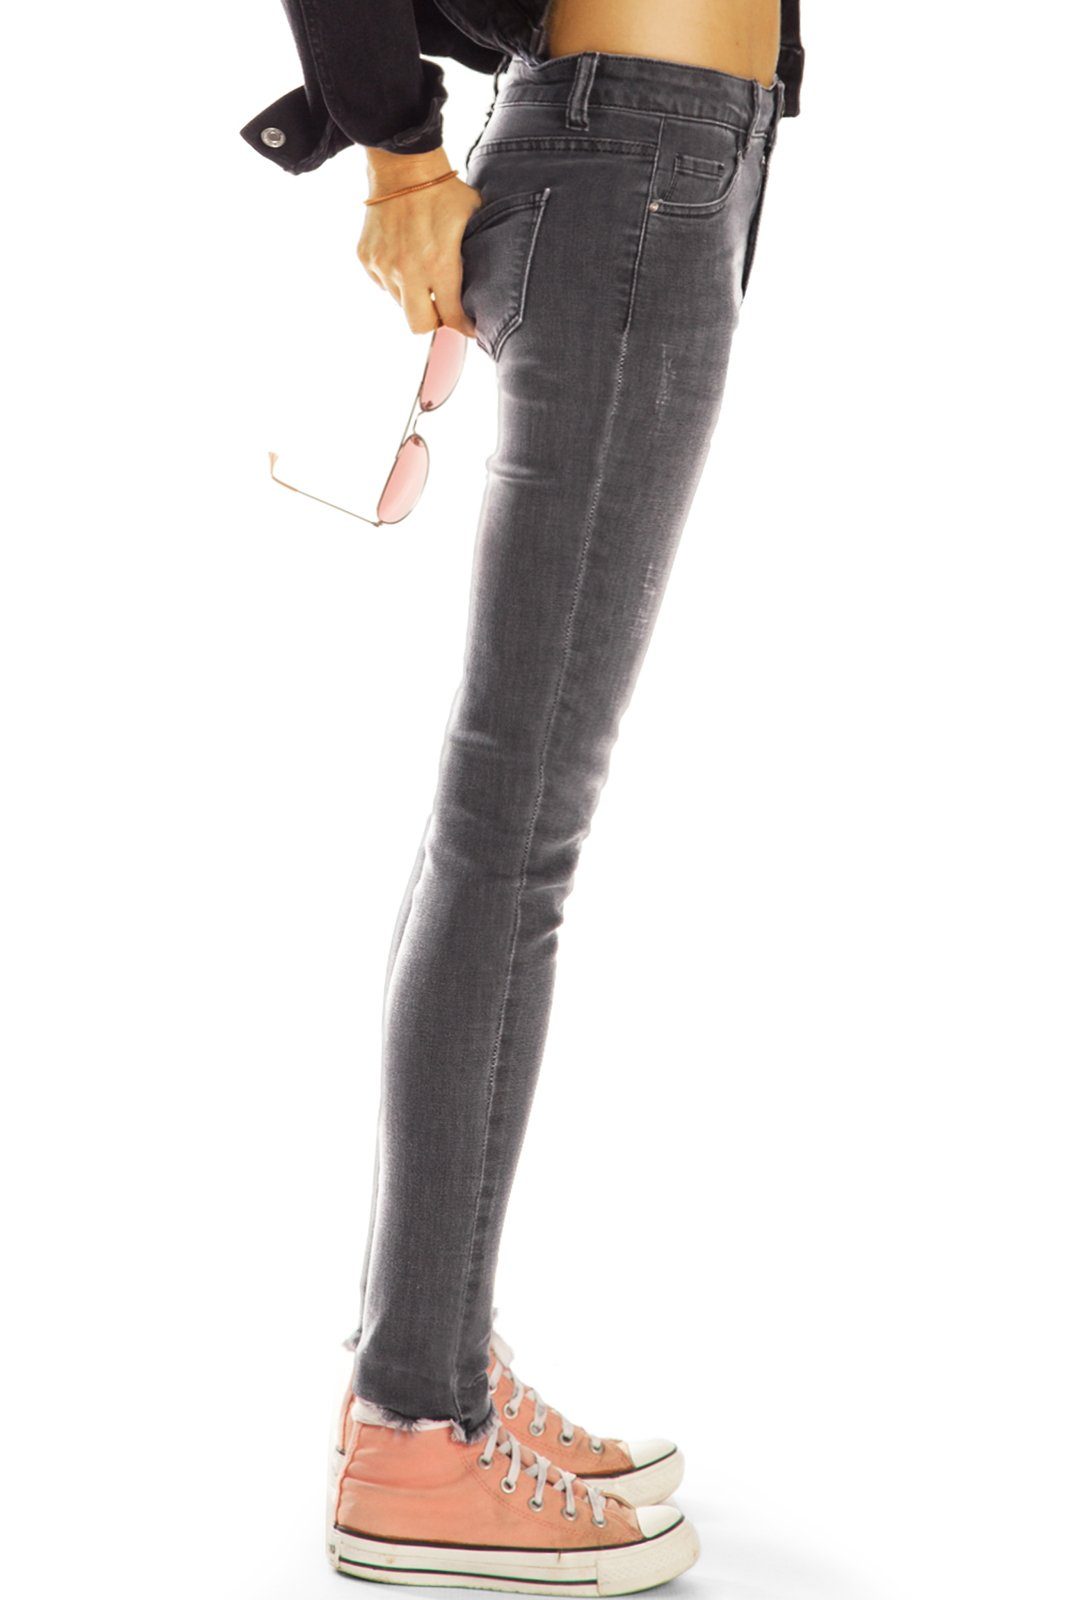 - Hose 5-Pocket-Style, - styled j21L-2 Damen Stretch-Anteil Medium be mit Röhrenjeans ausgefranster Skinny lange Fit Stretch Destroyed-Jeans Waist Saum, Slim